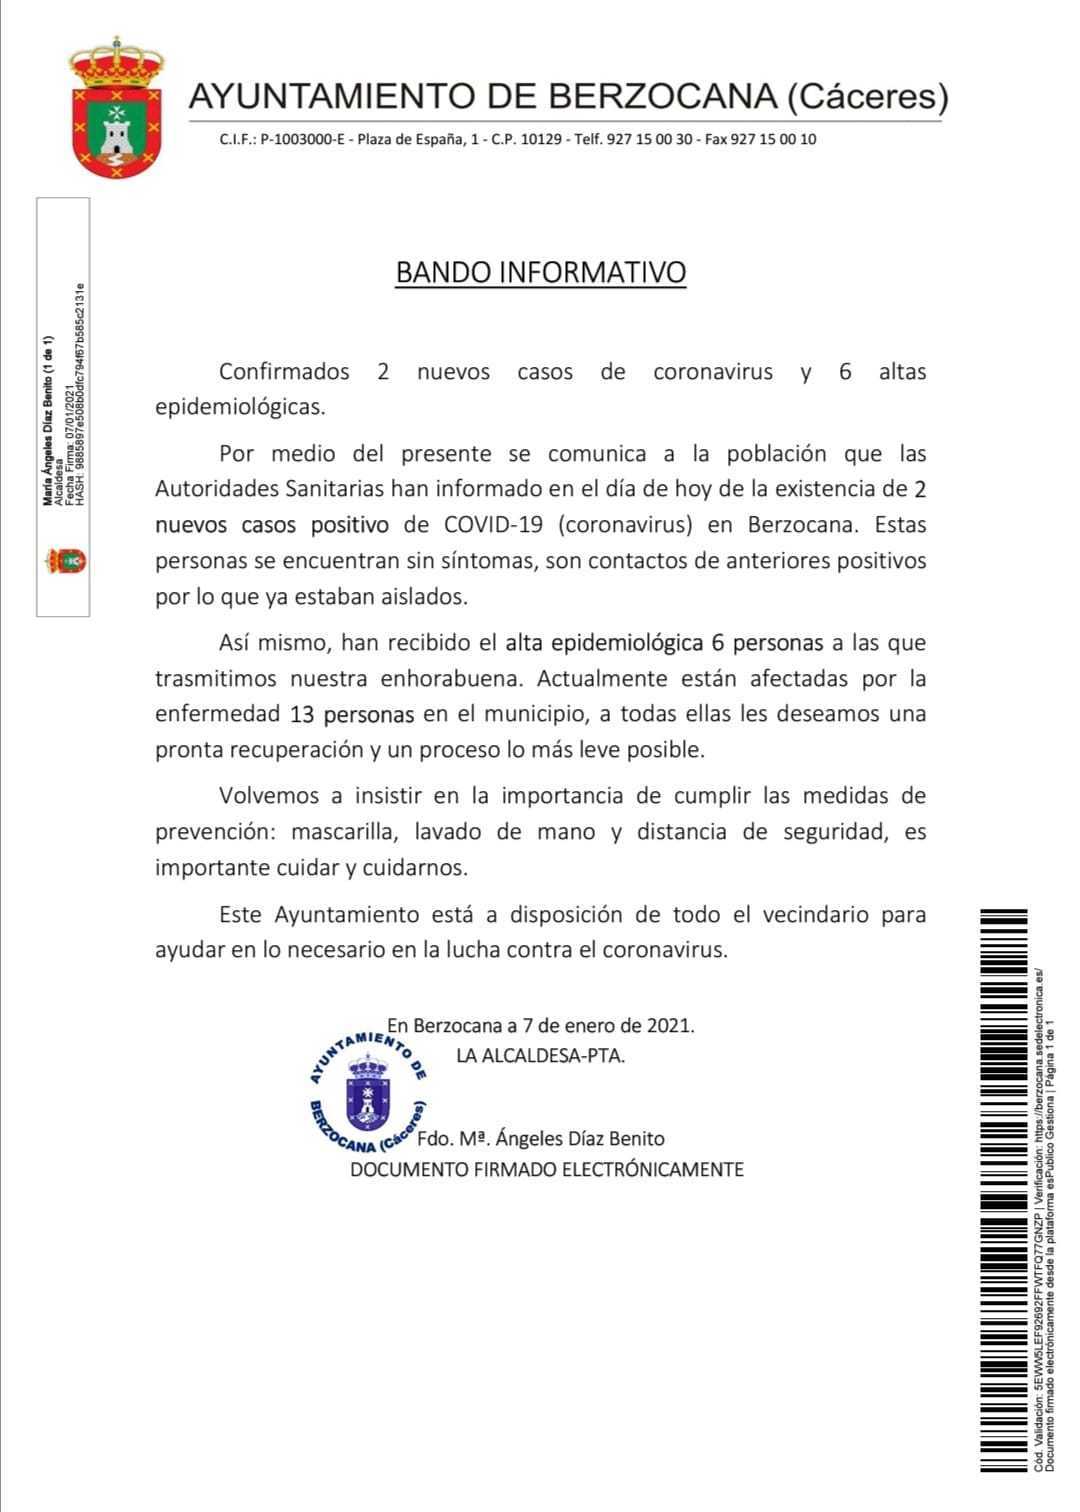 2 nuevos casos positivos de COVID-19 (enero 2021) - Berzocana (Cáceres)